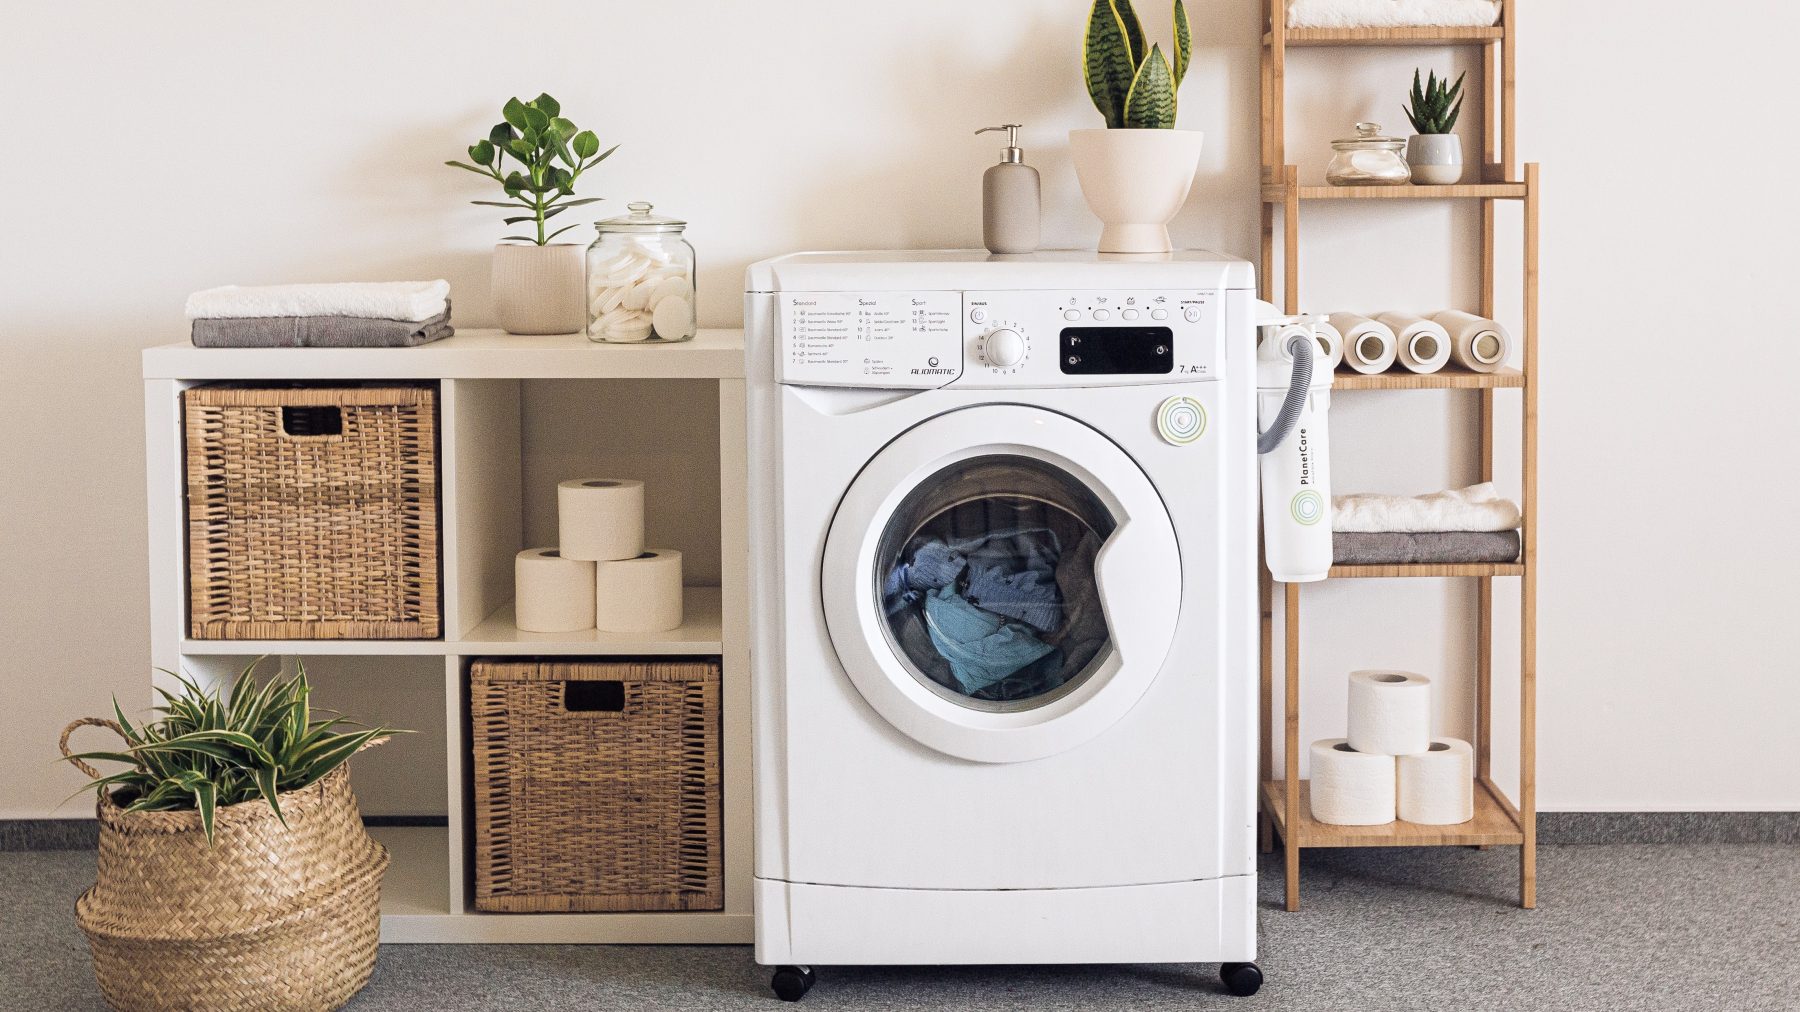 Grote wasjes, kleine wasjes: Is de wasmachine 's avonds laten draaien écht goedkoper?